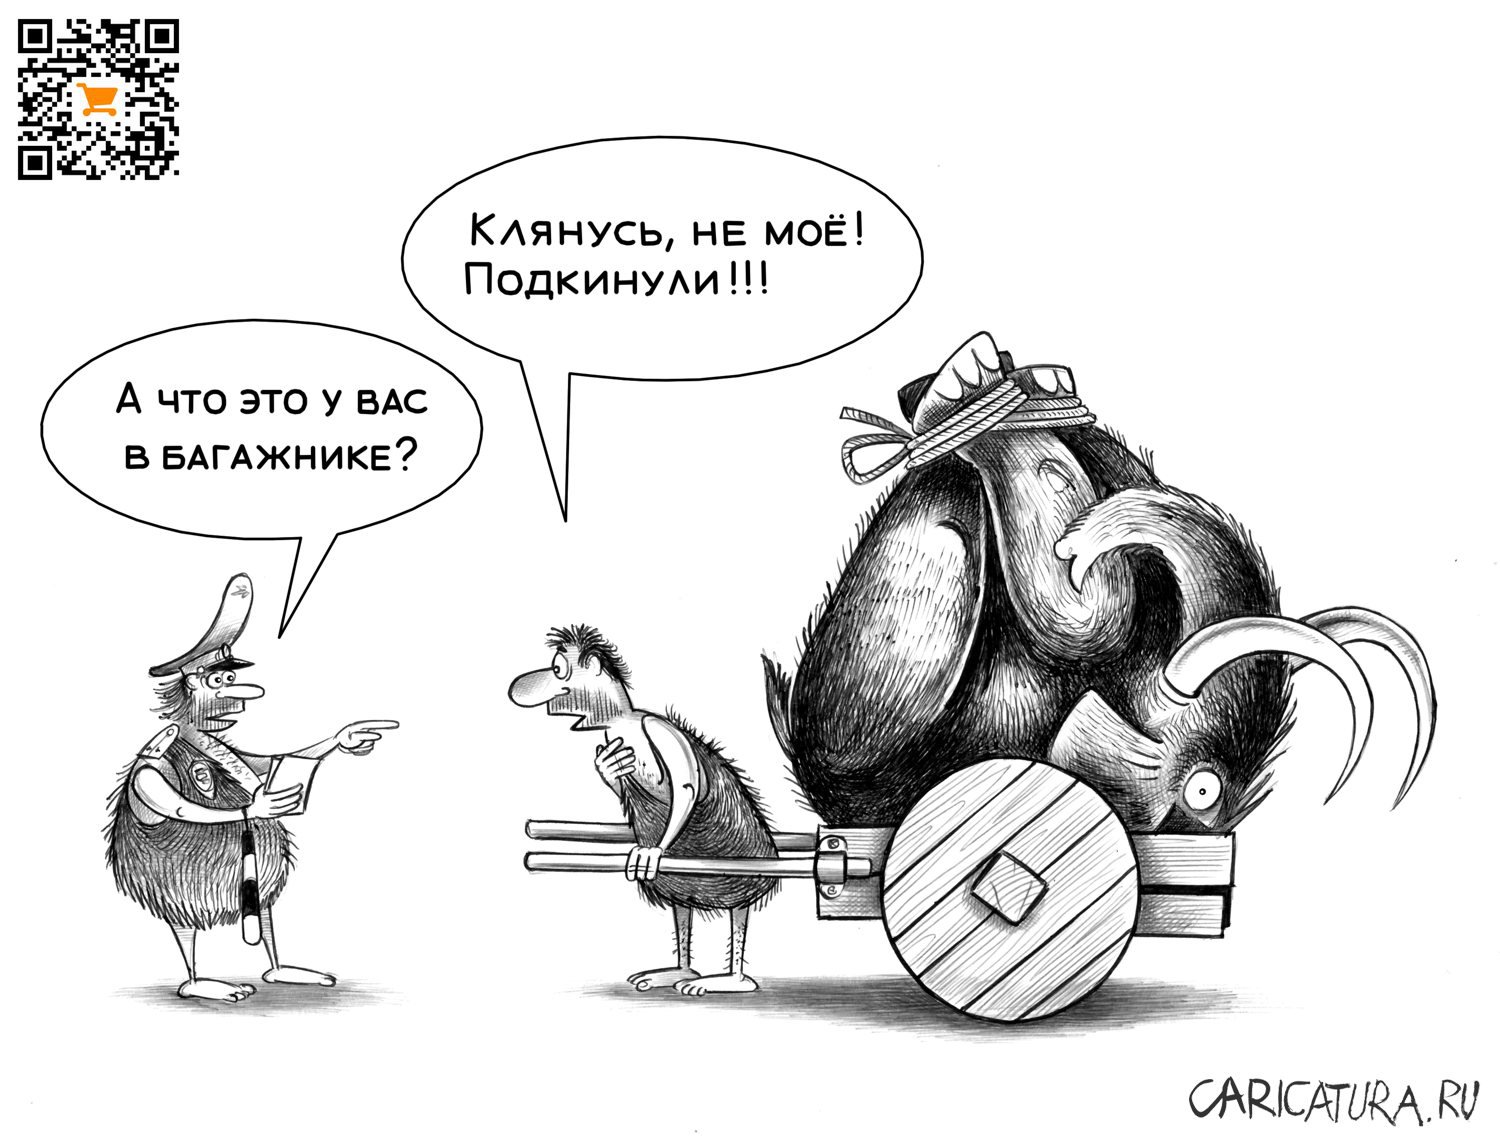 Карикатура "Подкинули", Сергей Корсун